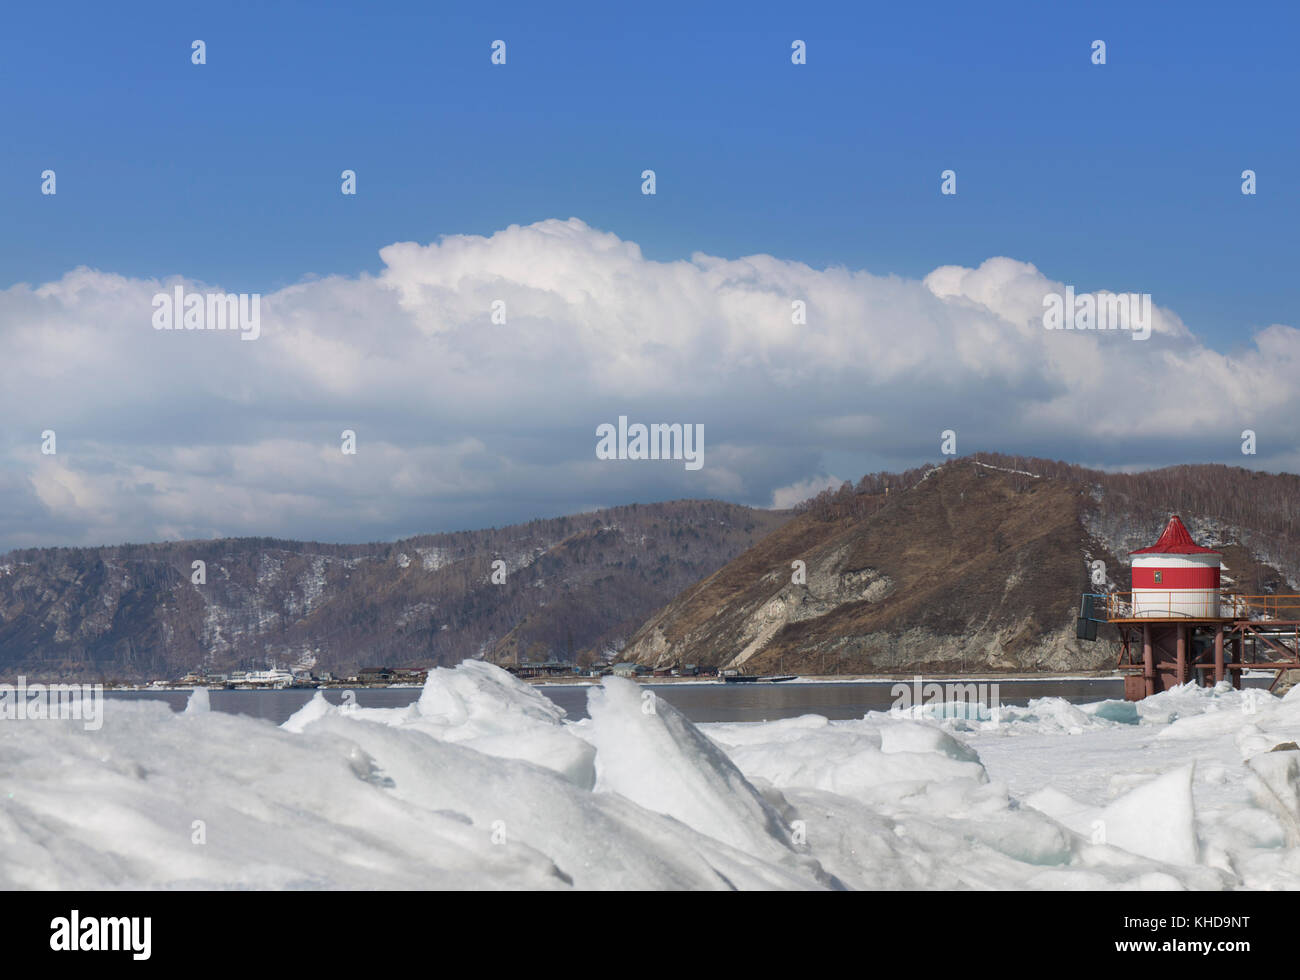 Sur les buttes de glace du lac Baikal en Sibérie. paysage d'hiver avec vue sur le phare rouge et blanc. la neige de la glace de lac. De grandes fissures dans la banquise. Des nuages blancs sur le ciel bleu Banque D'Images